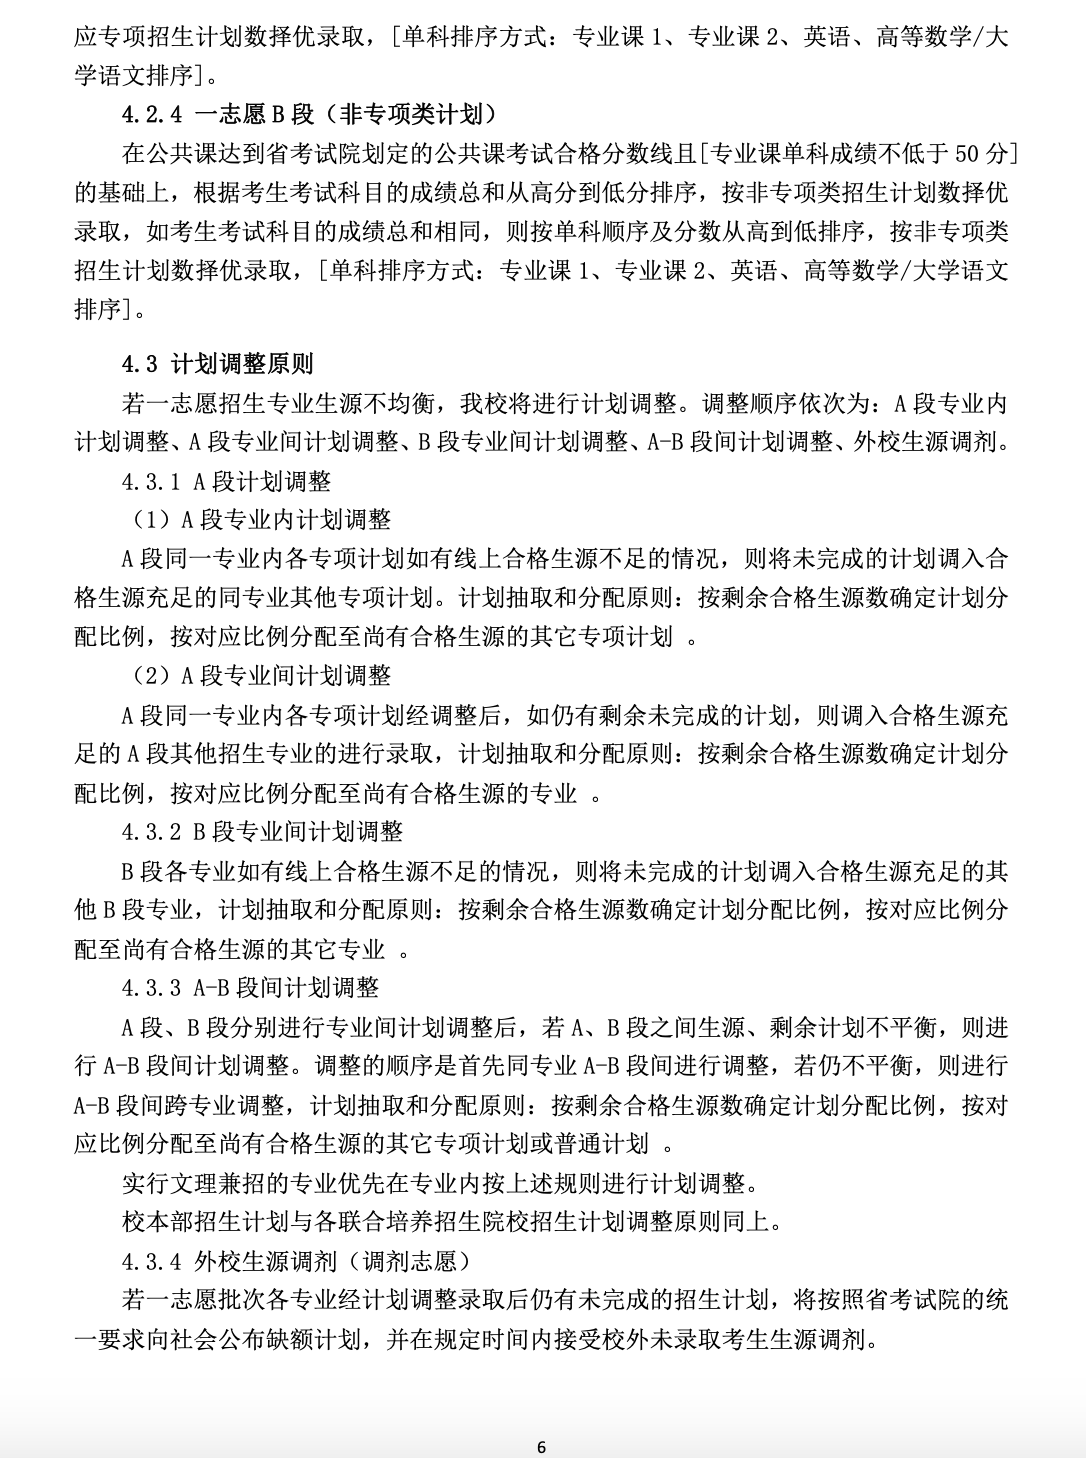 亳州学院公布2023年专升本招生章程